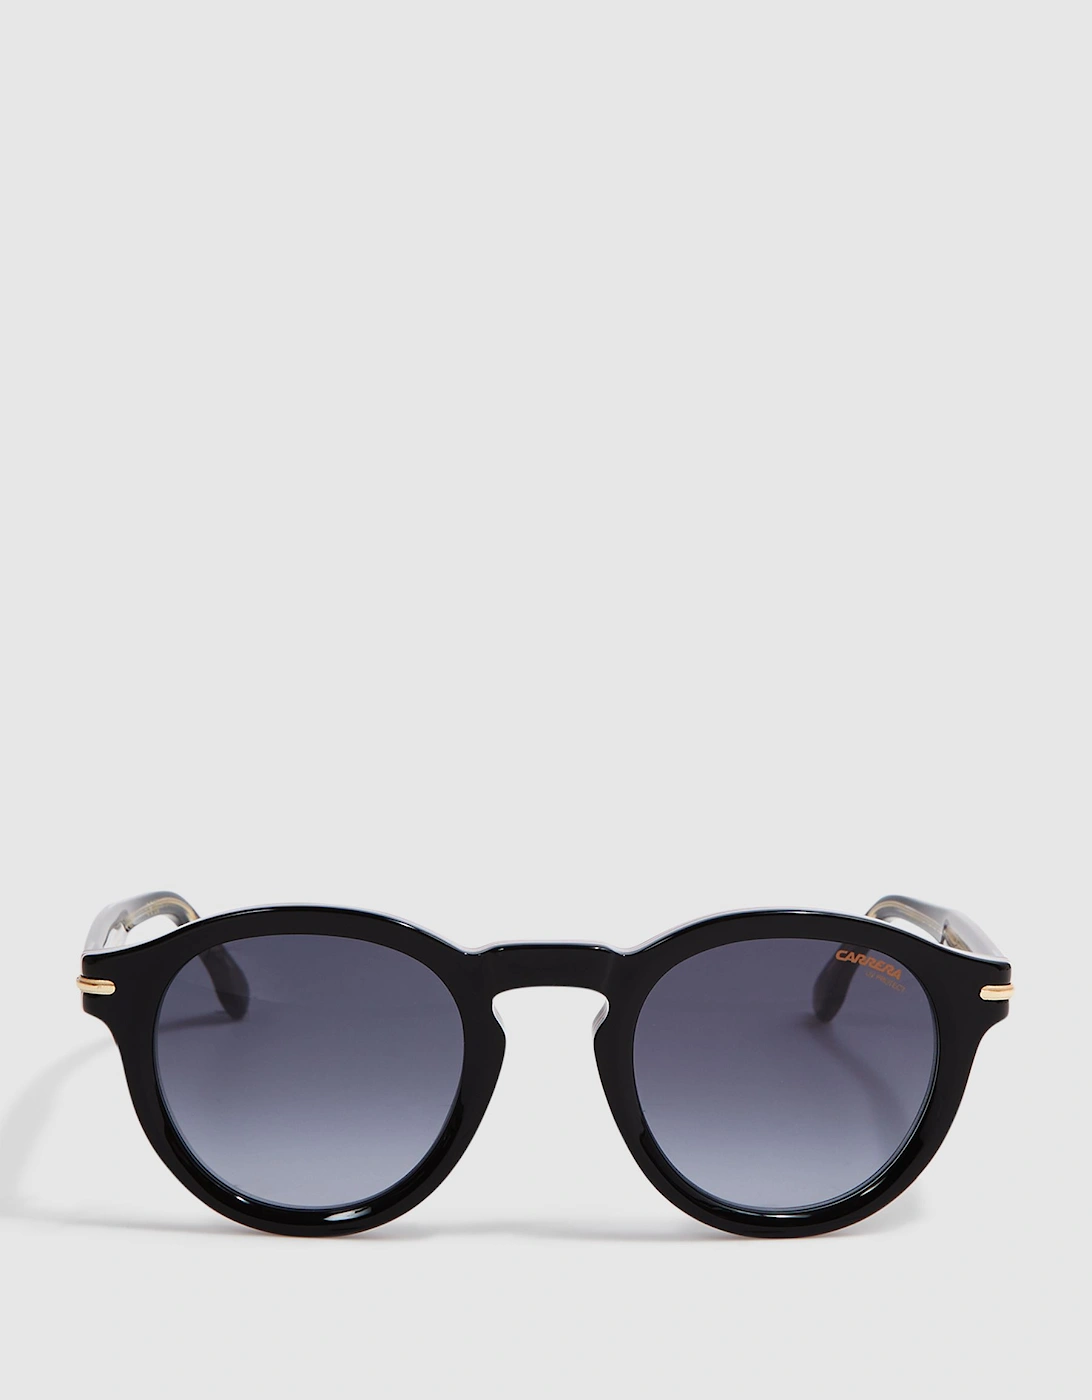 Carrera Eyewear Round Tortoiseshell Sunglasses, 2 of 1